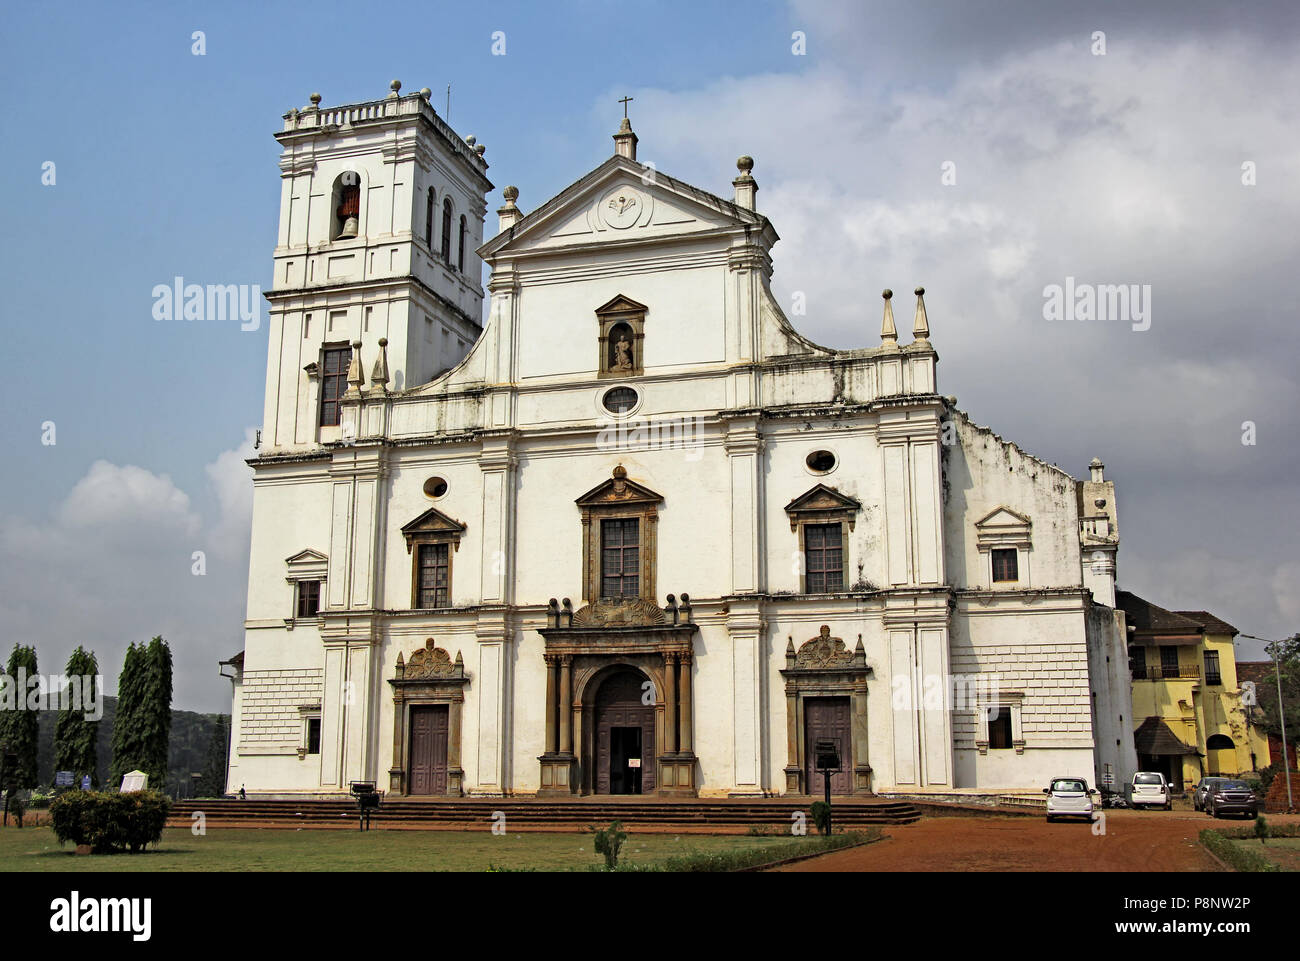 Facciata della storica Se Cathedral, St Catherine's Cathedral, nella vecchia Goa, India. Costruita dai Portoghesi nel XVI secolo è la più grande chiesa in Asia. Foto Stock